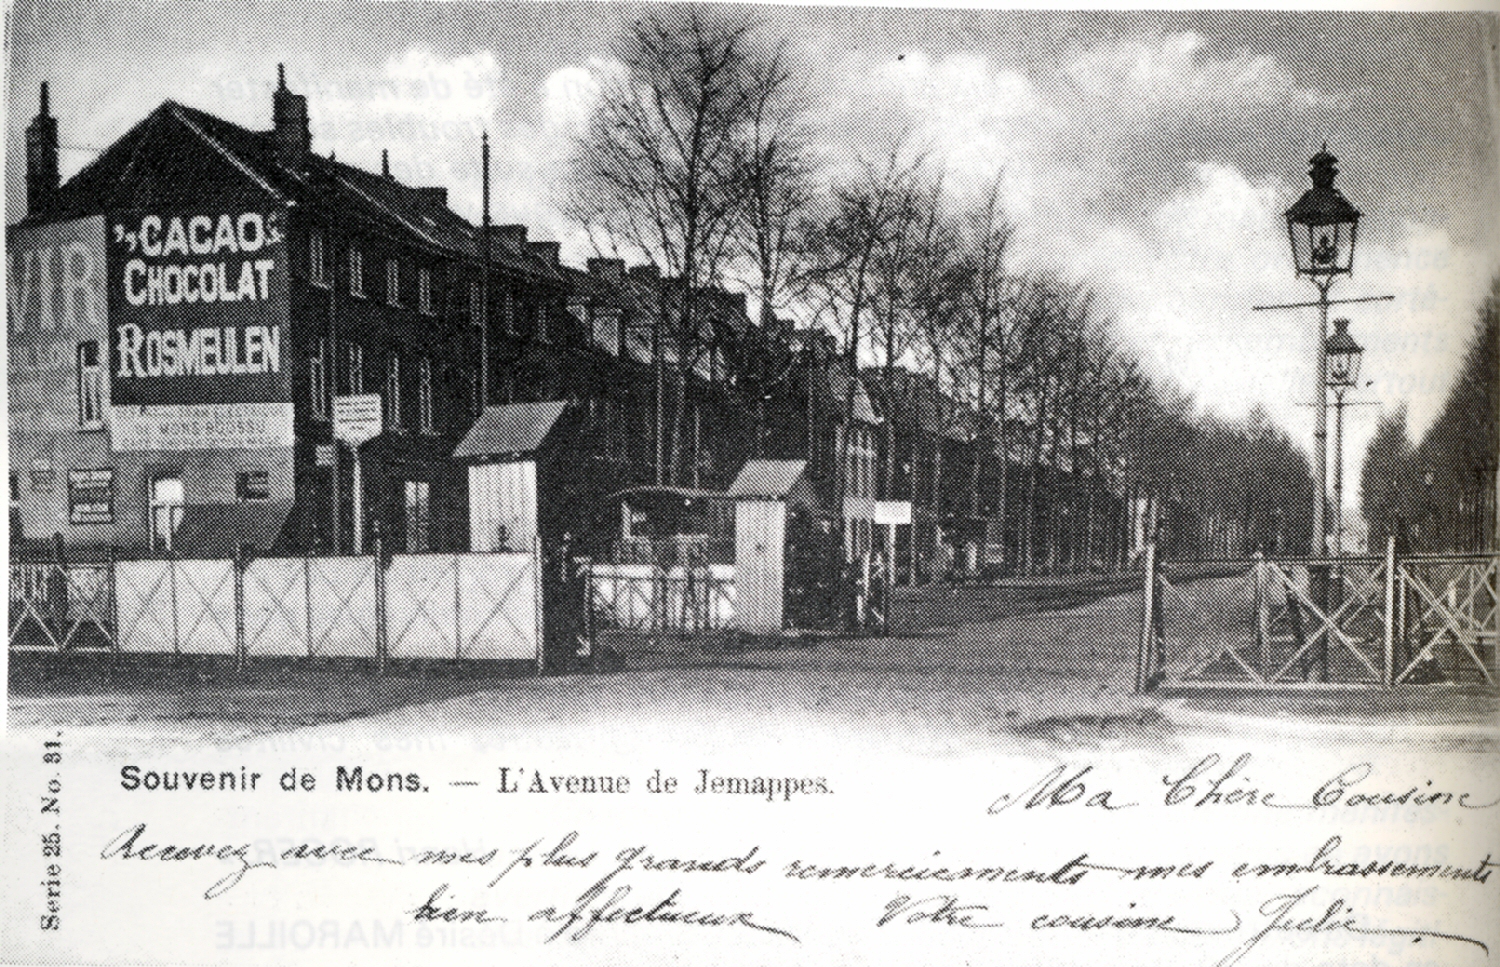 Mons : Avenue de Jemappes où l'on voit le passage à niveau à l'emplacement de l'actuel viaduc.